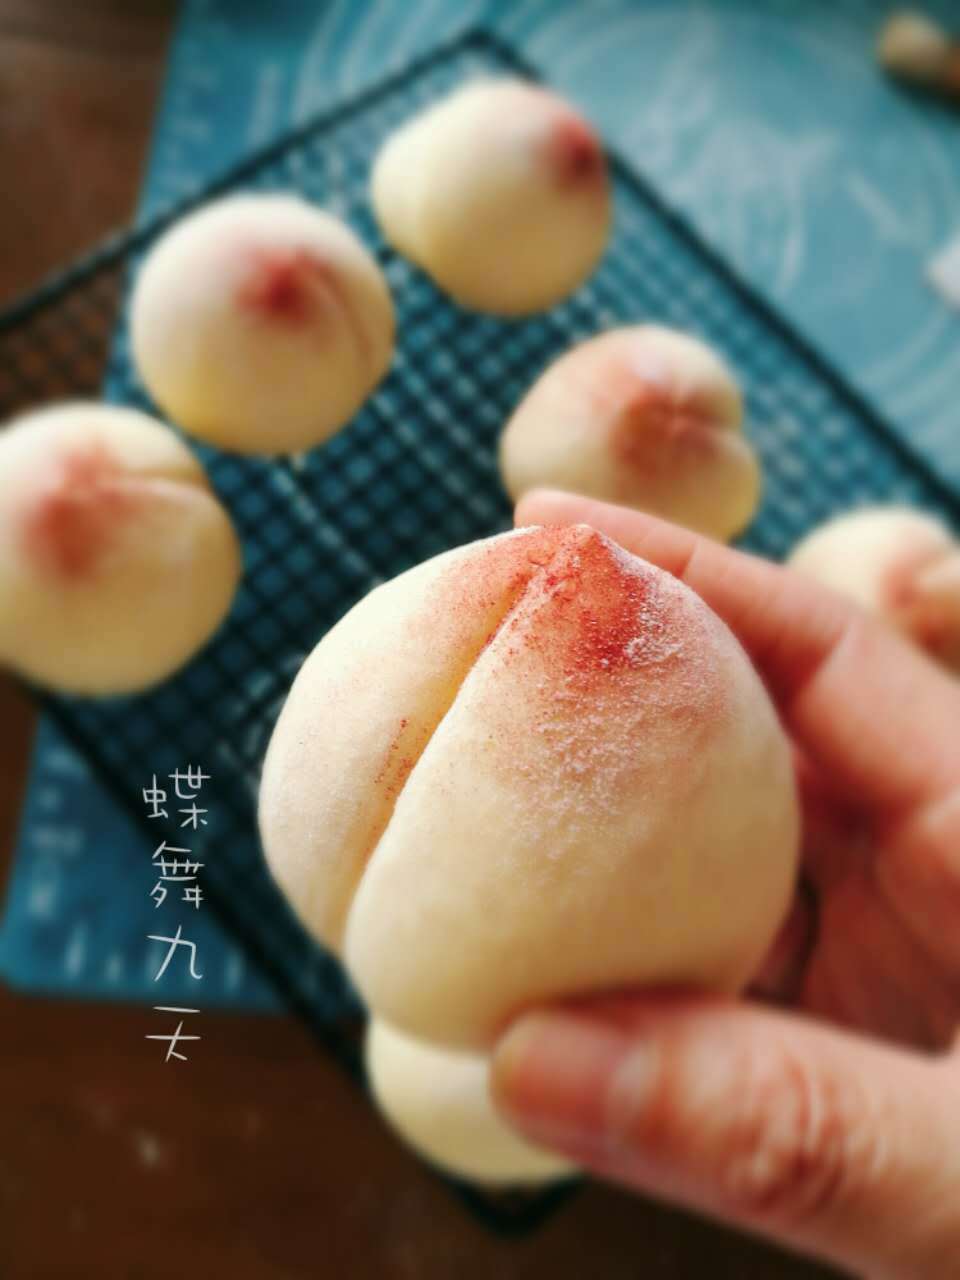 寿桃面包